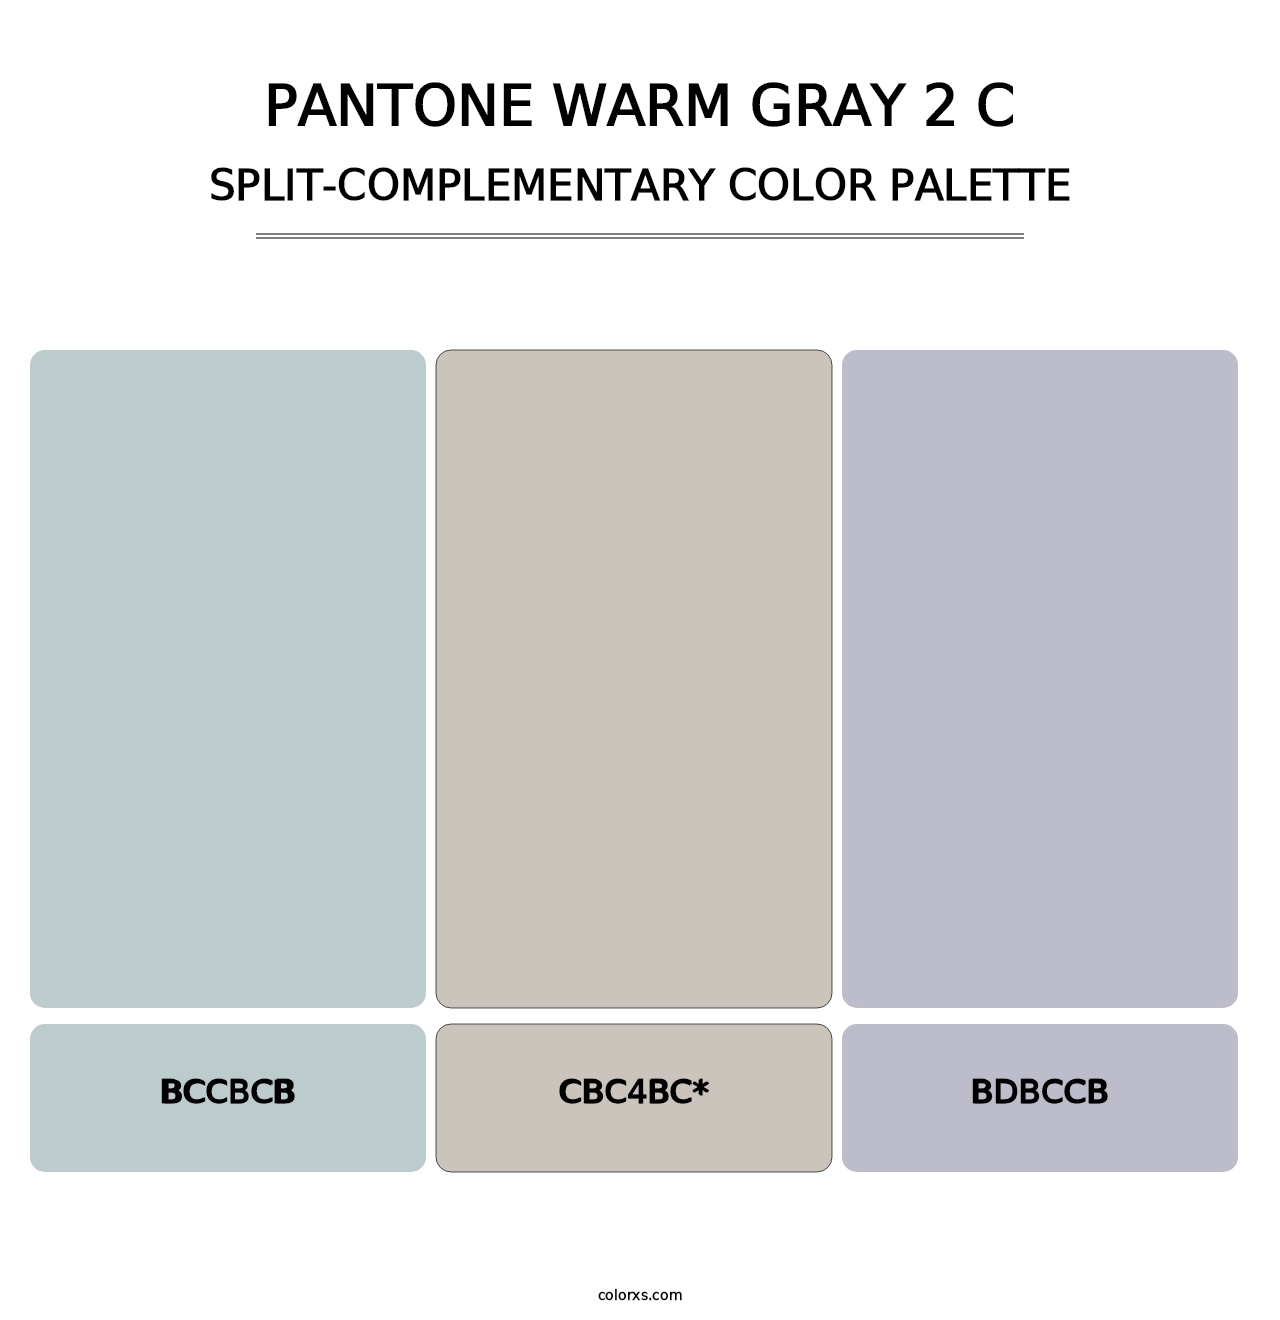 PANTONE Warm Gray 2 C - Split-Complementary Color Palette